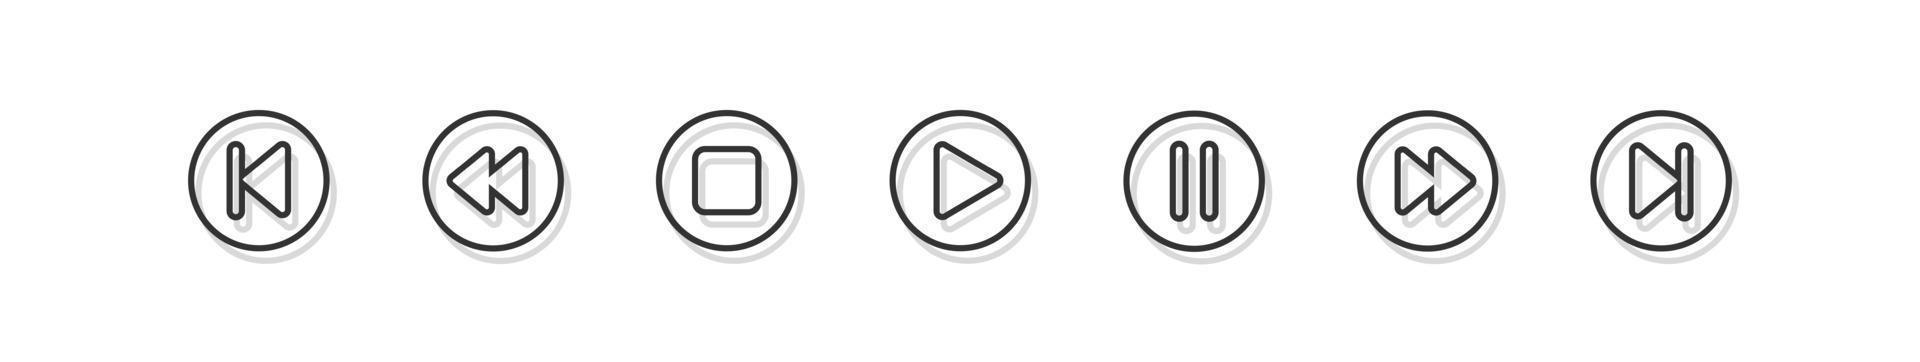 símbolo de botón de reproductor de video o audio. conjunto de iconos de botones de reproductor multimedia aislado sobre fondo blanco. ilustración vectorial. vector